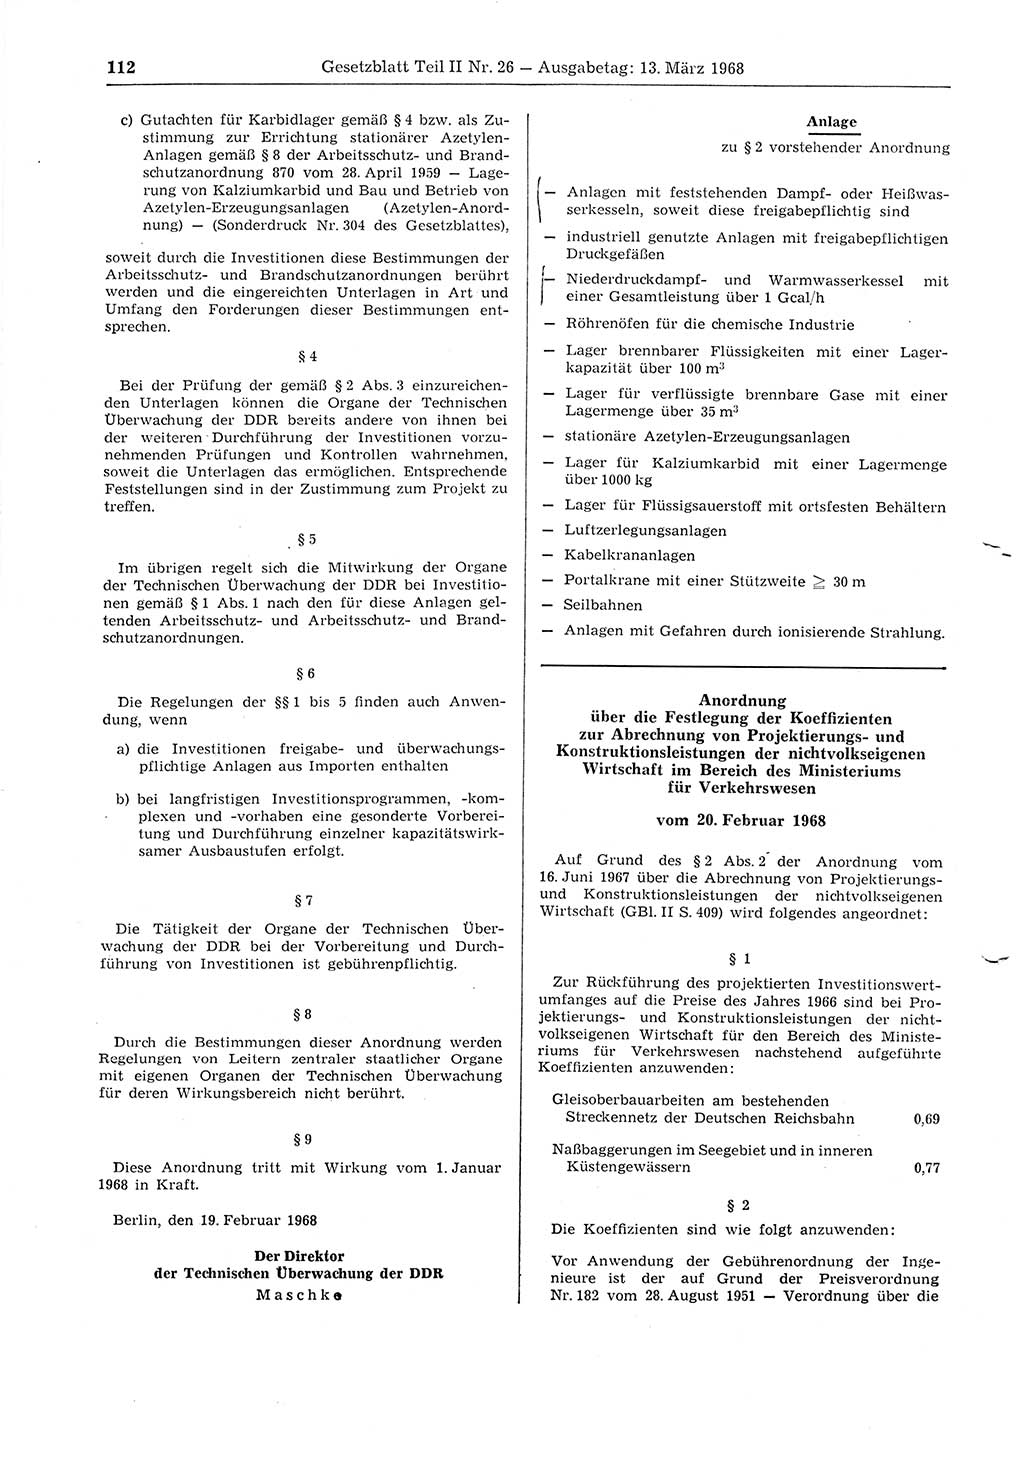 Gesetzblatt (GBl.) der Deutschen Demokratischen Republik (DDR) Teil ⅠⅠ 1968, Seite 112 (GBl. DDR ⅠⅠ 1968, S. 112)